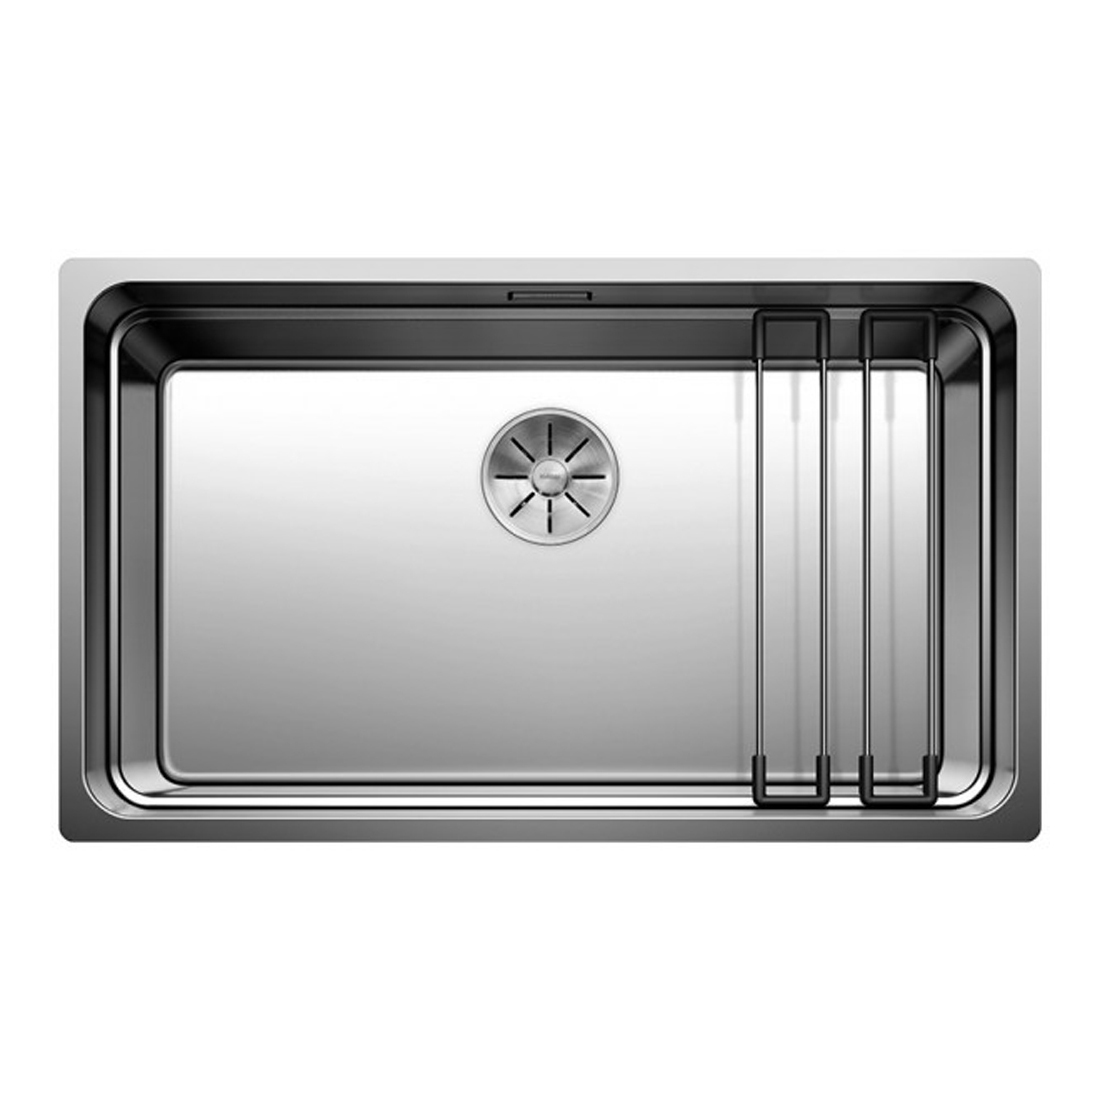 Кухонная мойка Blanco Etagon 700-U зеркальная полировка кухонная мойка blanco axis iii 6s if правая зеркальная полировка